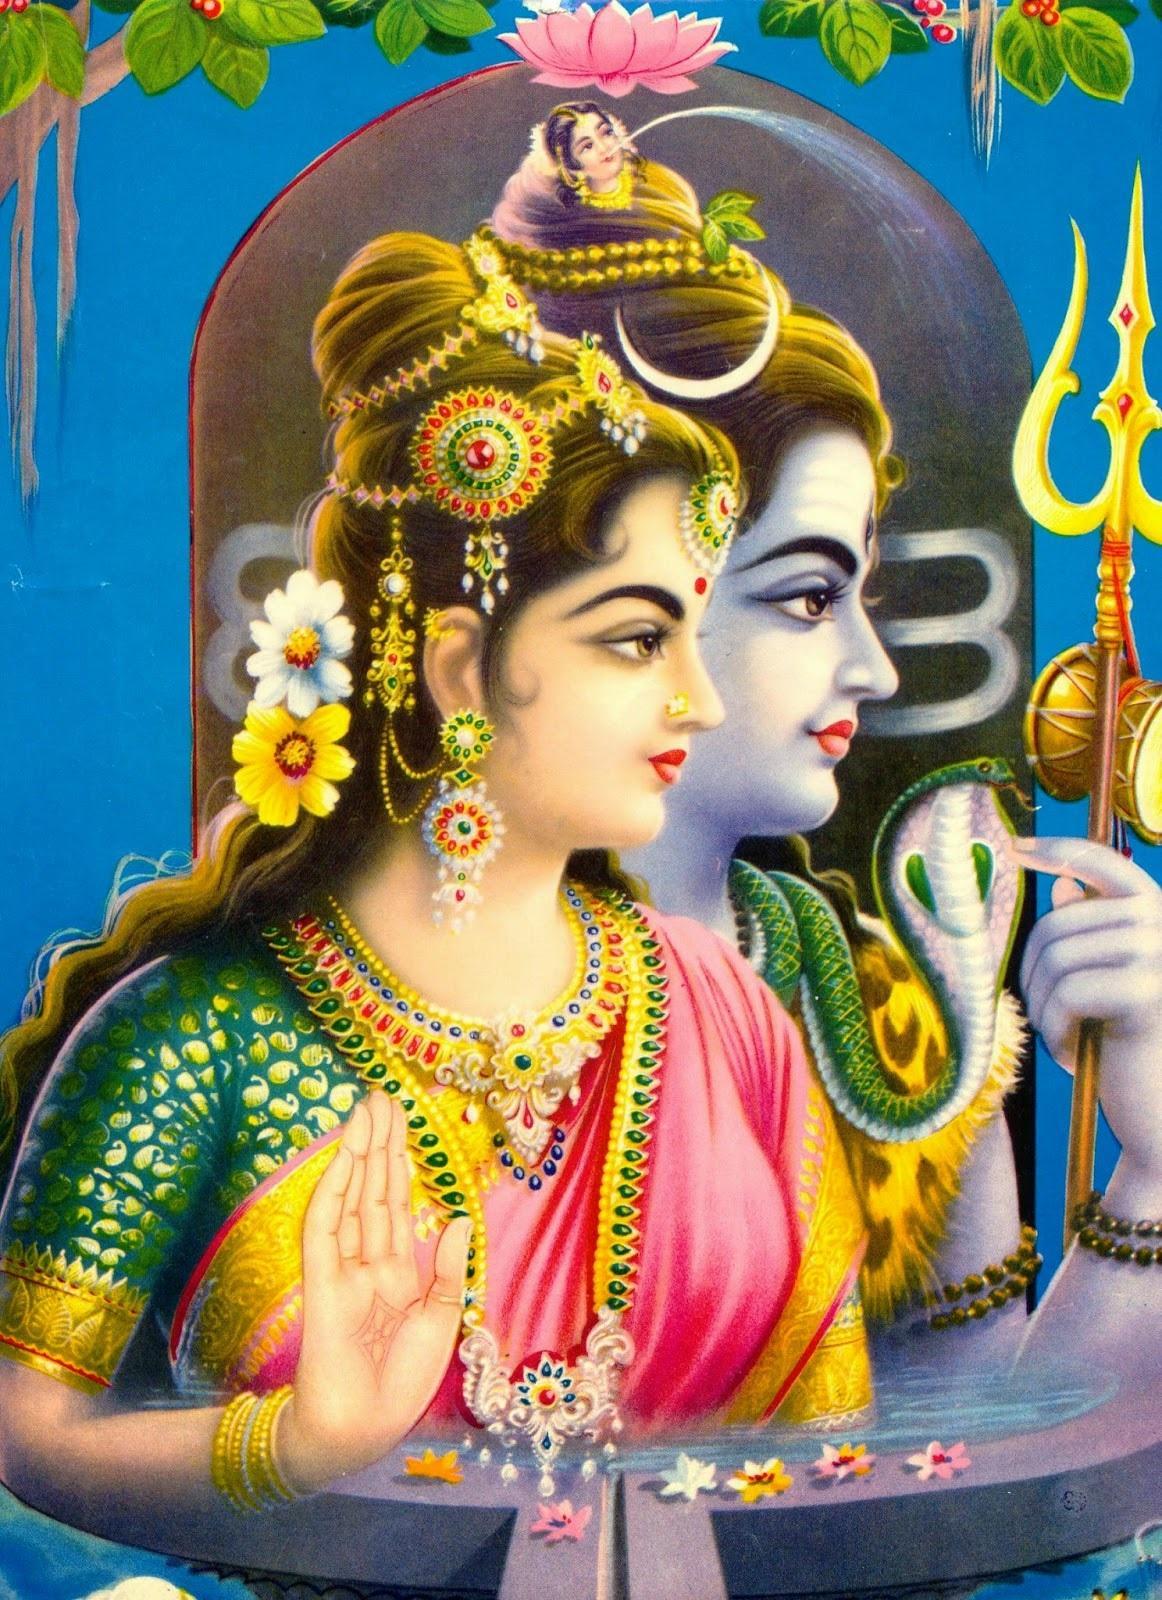 श्रावण मास 2020: भगवान शिव ने मां पार्वती को बताए थे ये रहस्य